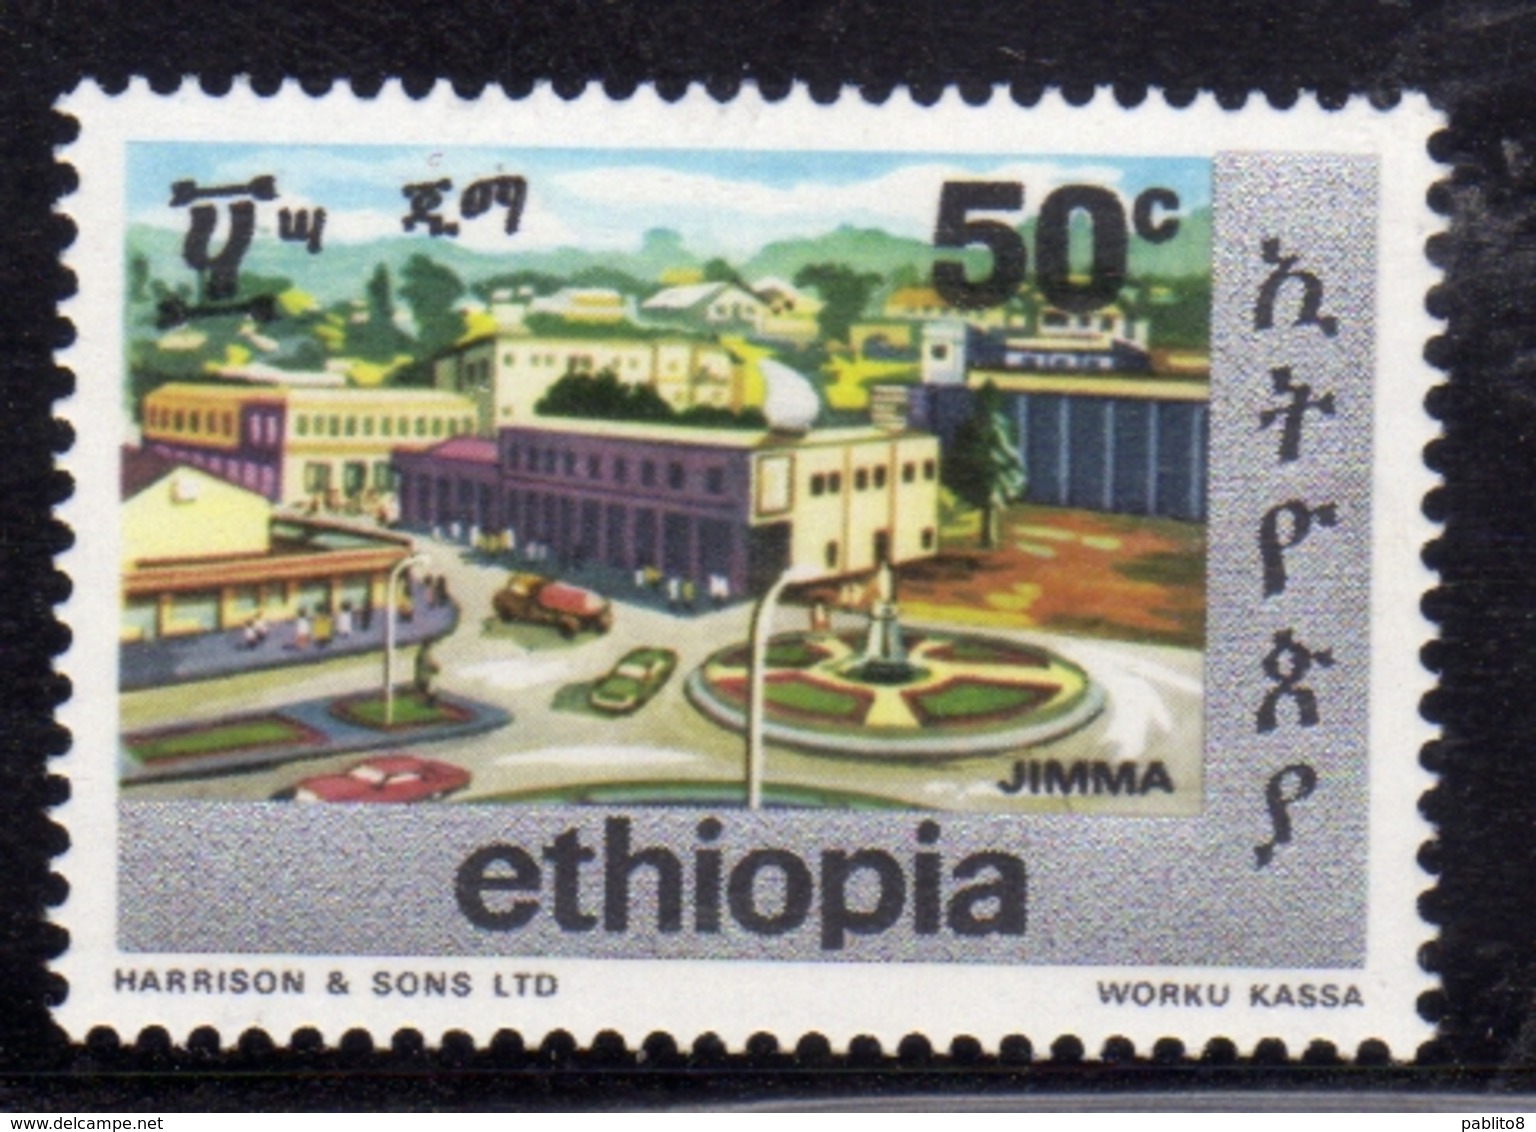 ETHIOPIA ETIOPIA ETHIOPIE 1977 TOWNS OF ADDIS JIMA CENT. 50c MNH - Ethiopia